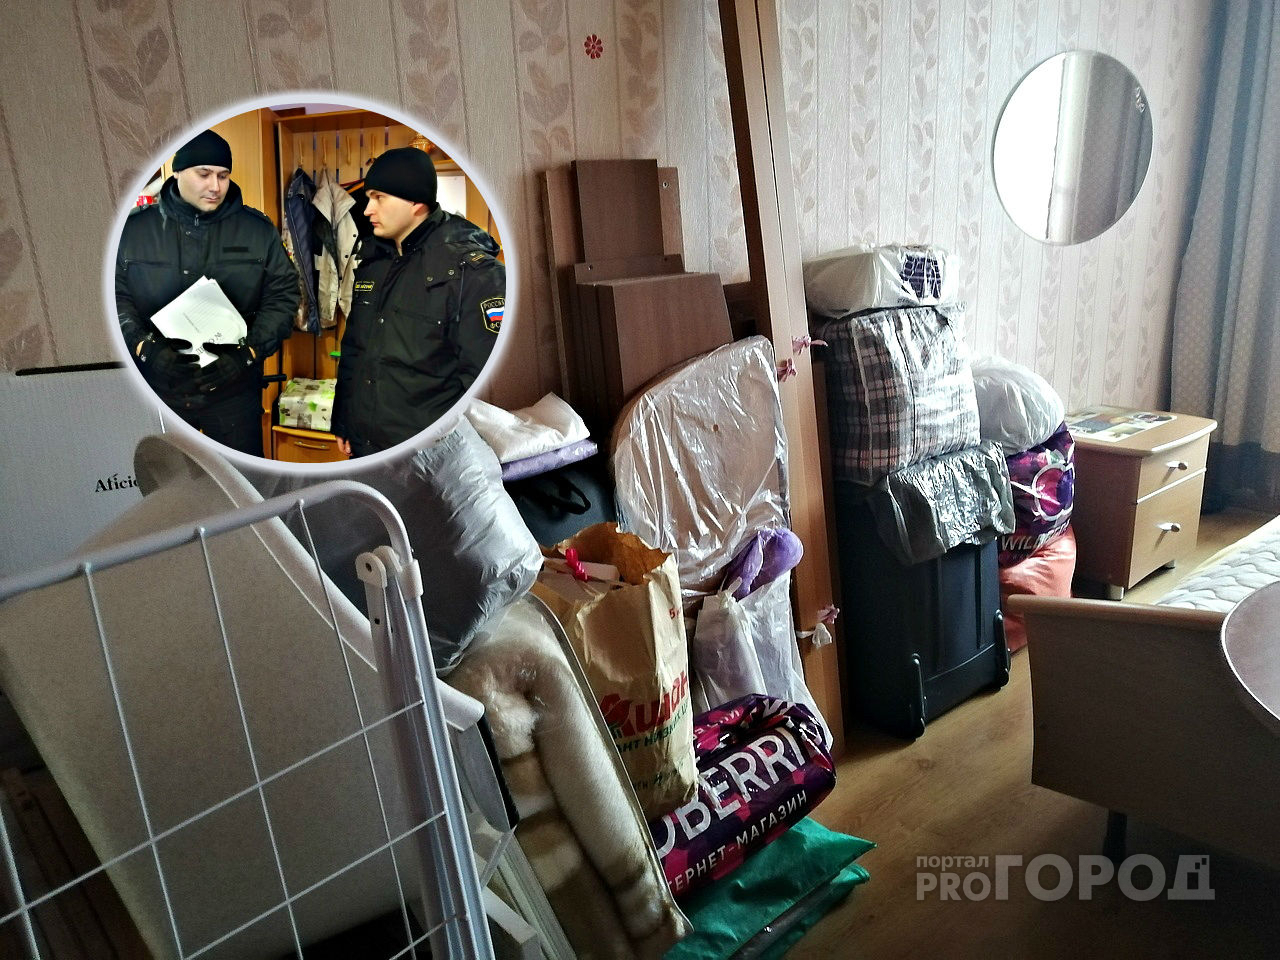 Ярославна купила квартиру вместе с женщиной и ее дочкой